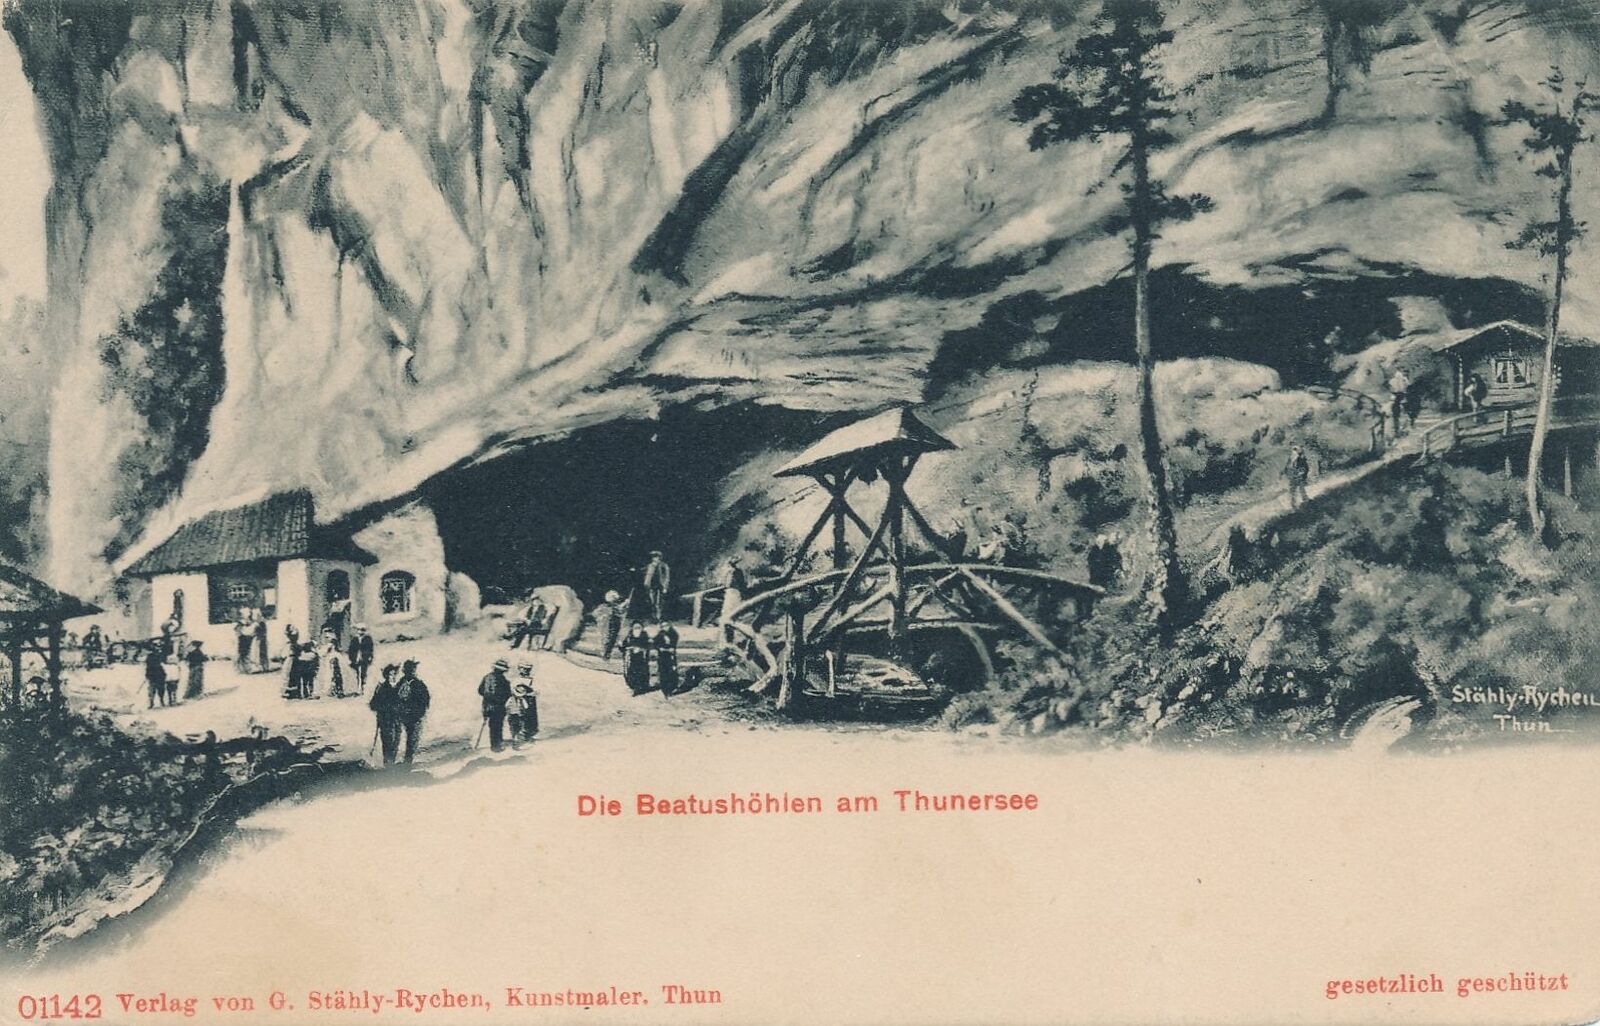 SWITZERLAND - Die Beatushohlen am Thunersee - 1907